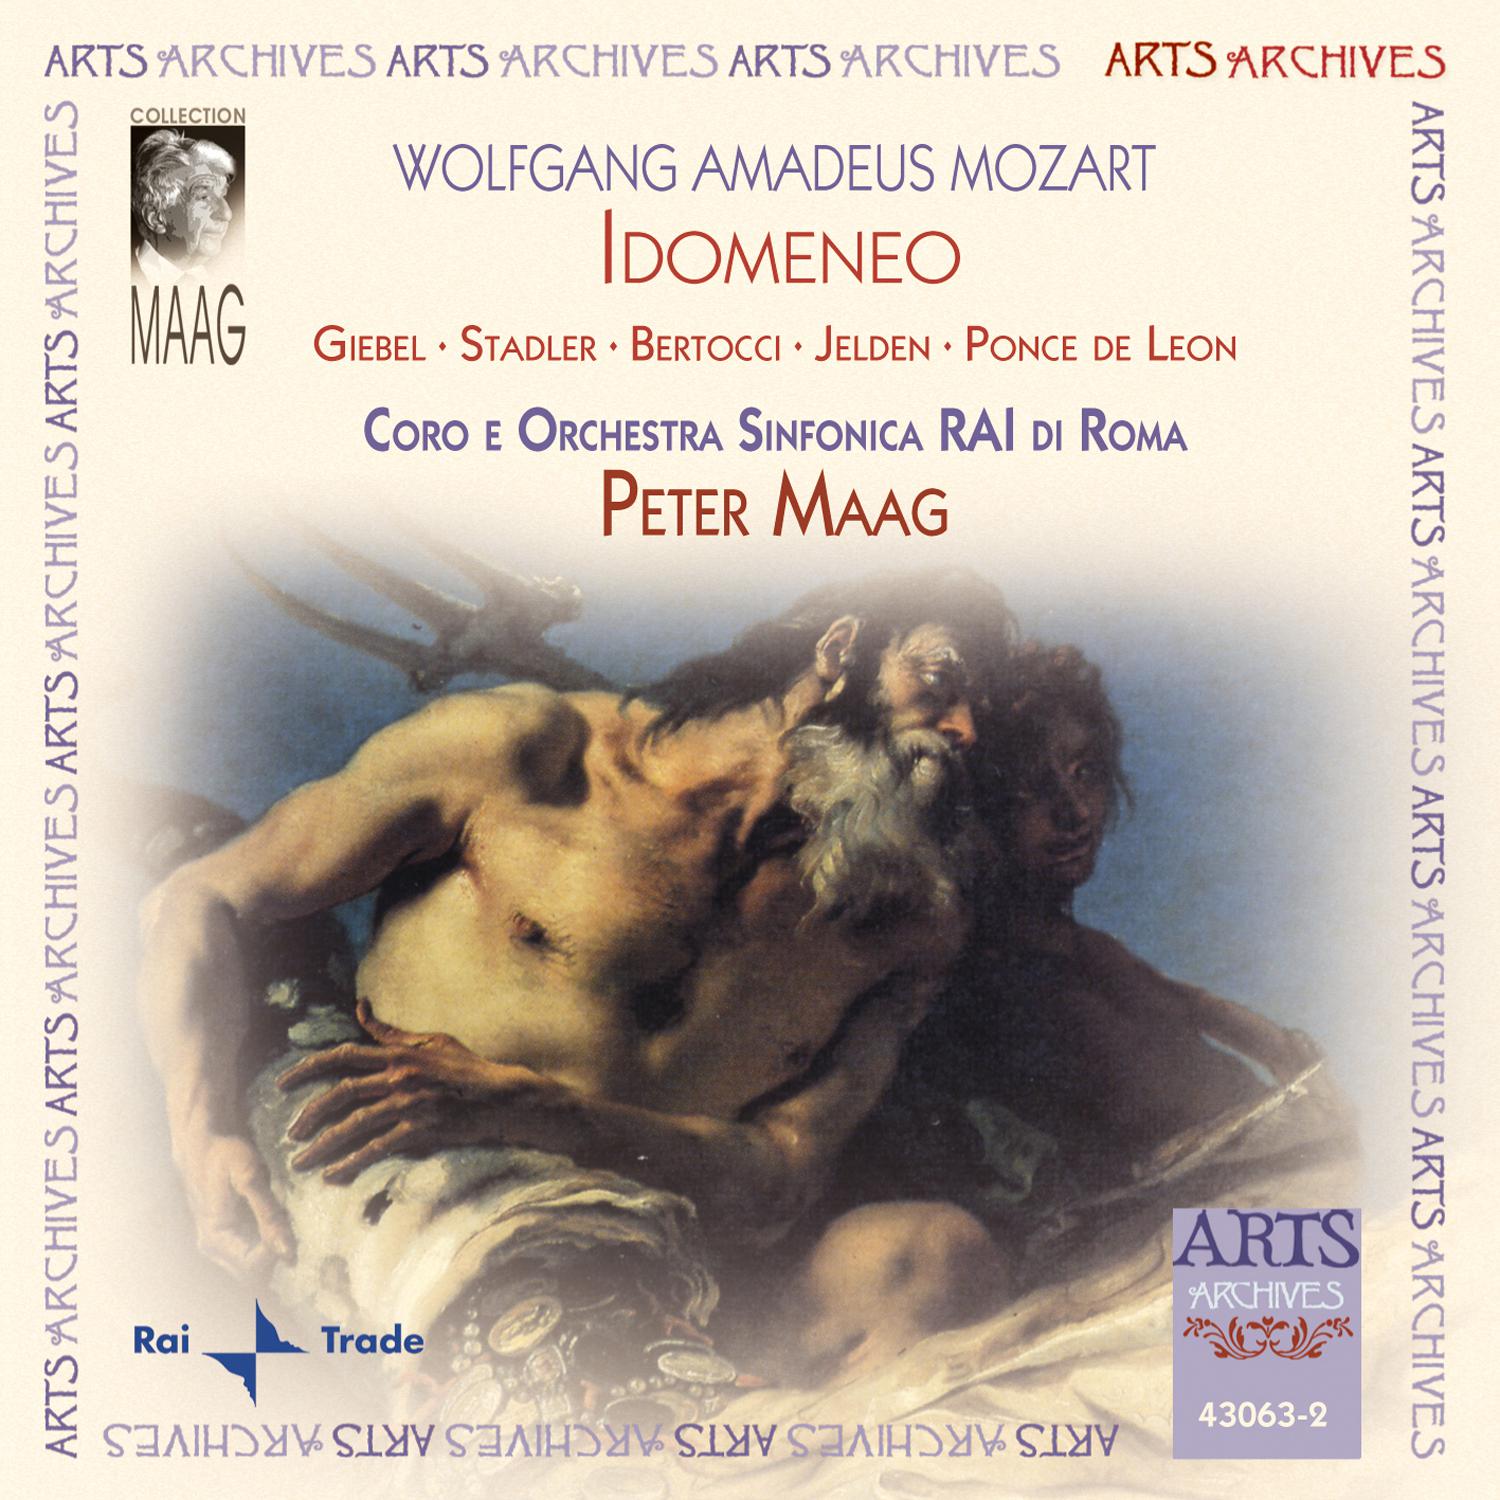 Coro RAI Di Roma - Act 3, Scene III (Idomeneo, Elettra, Ilia, Idamante): Recitativo 